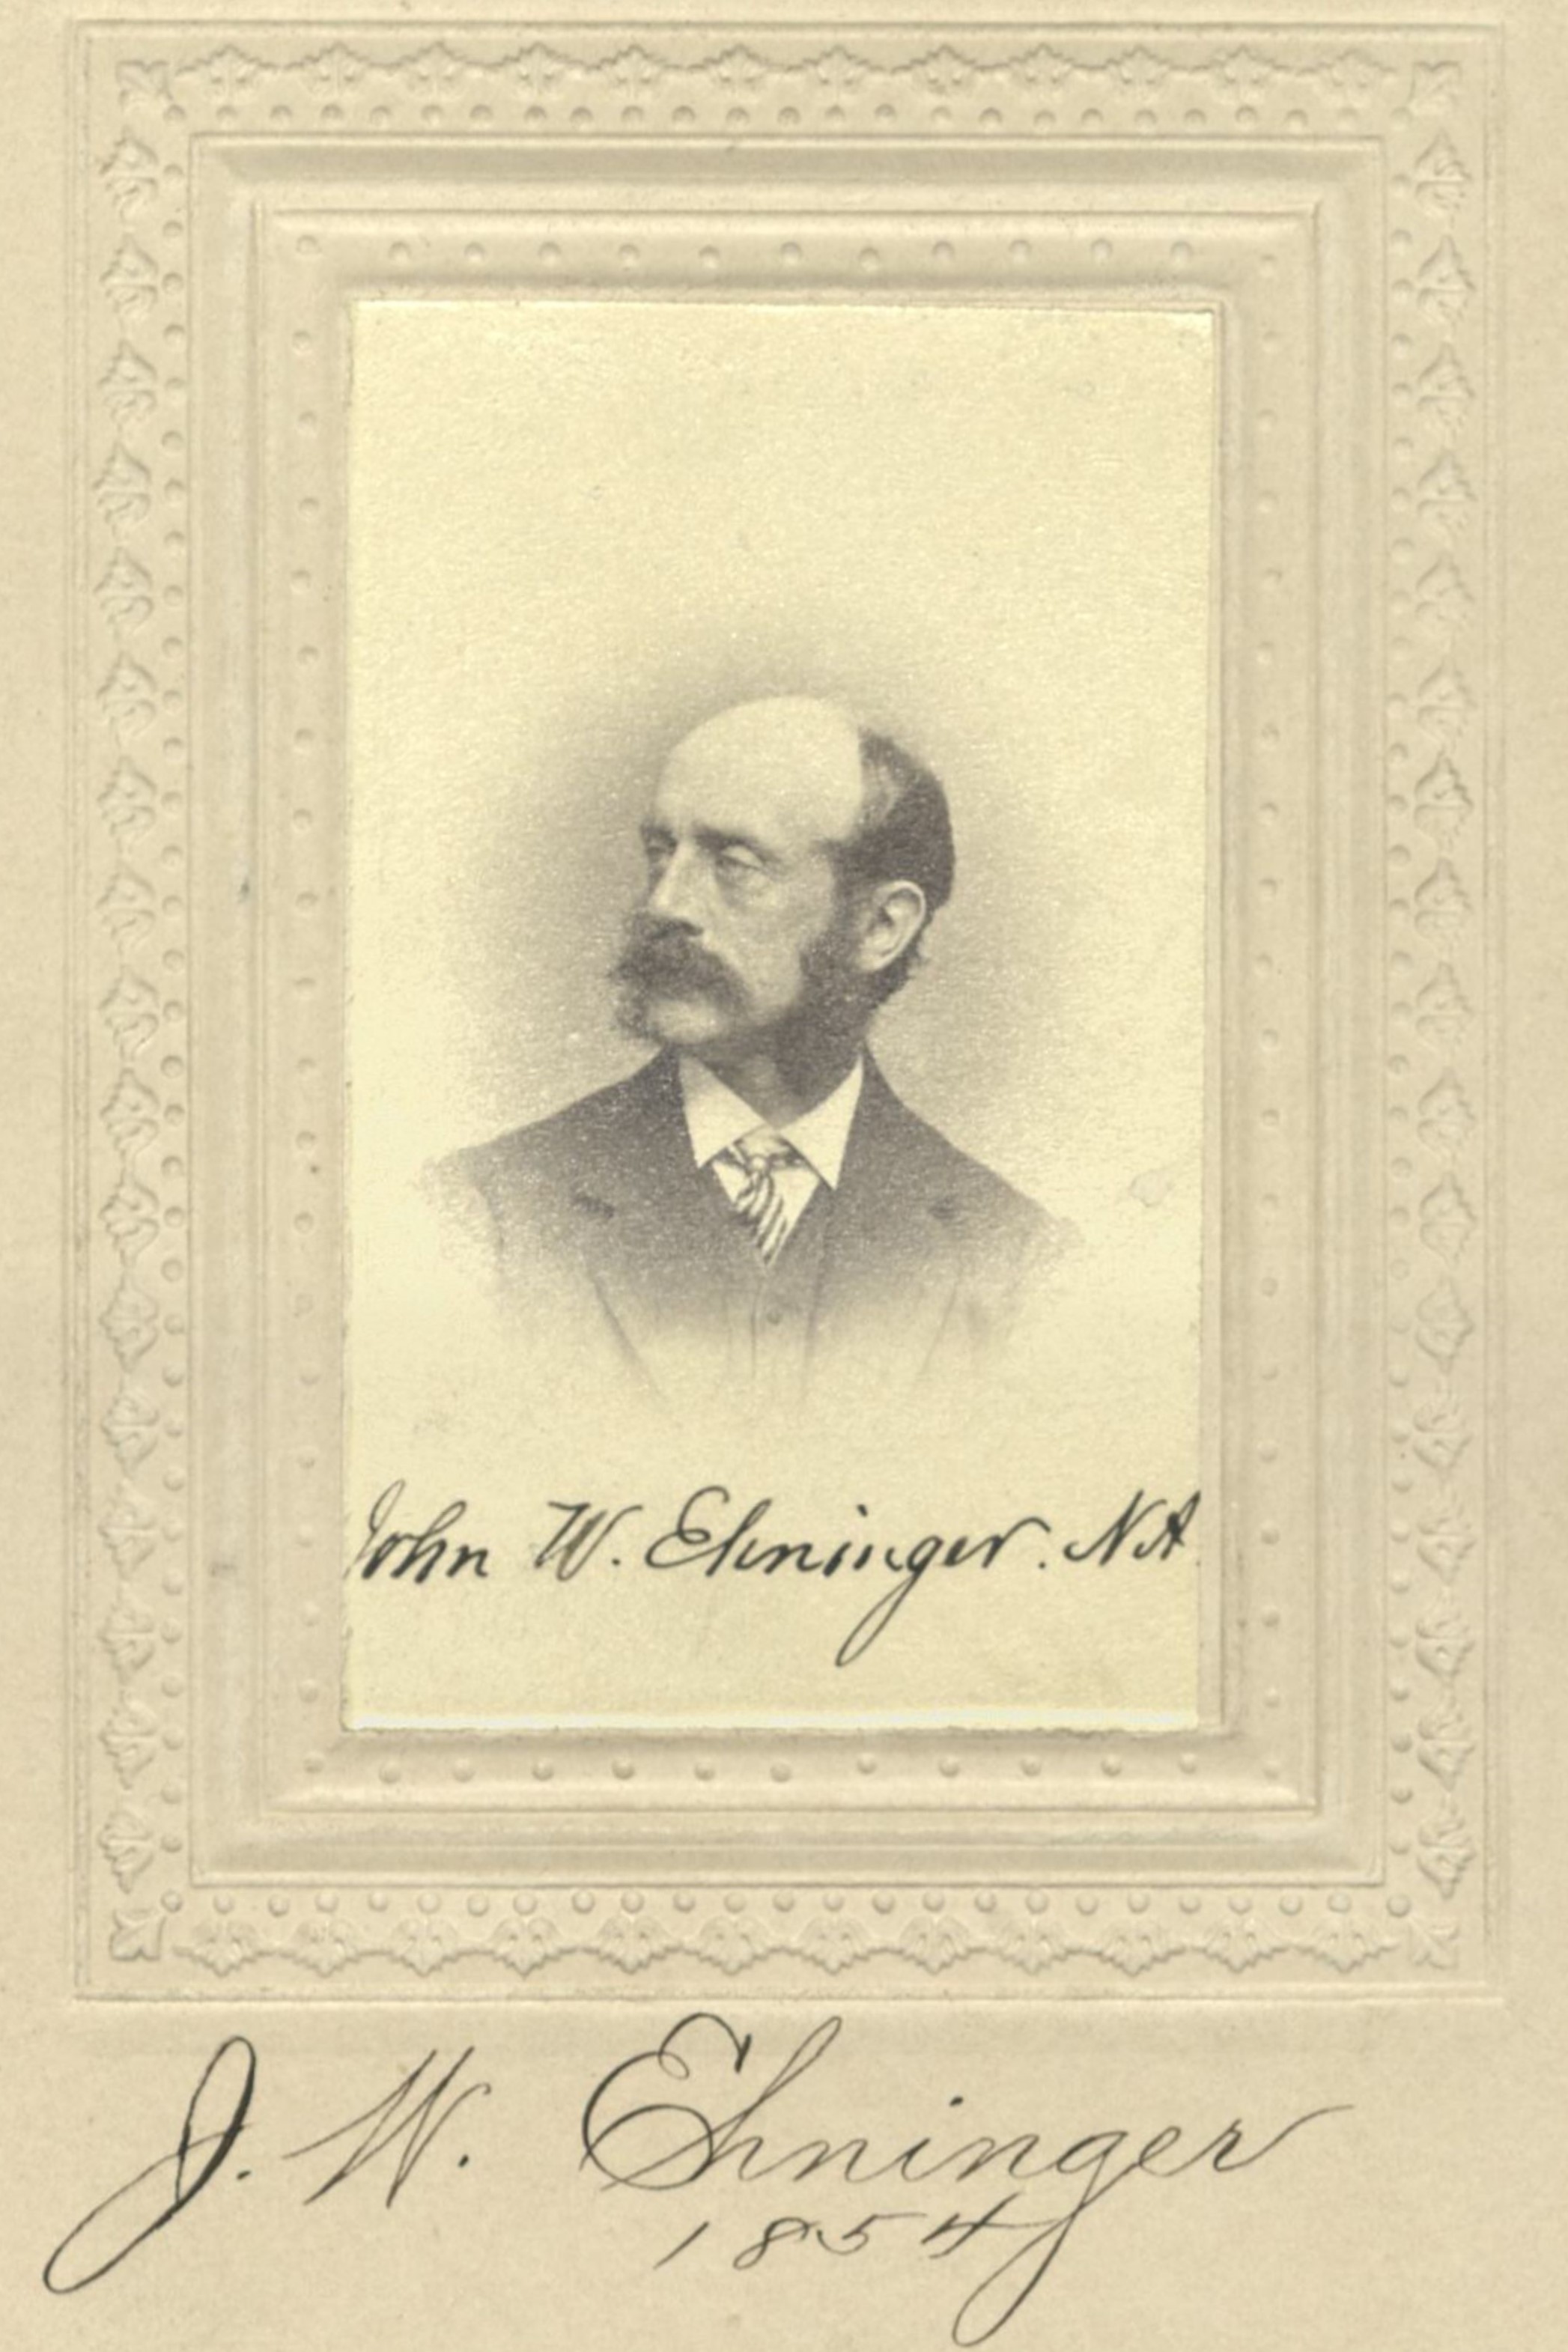 Member portrait of John W. Ehninger